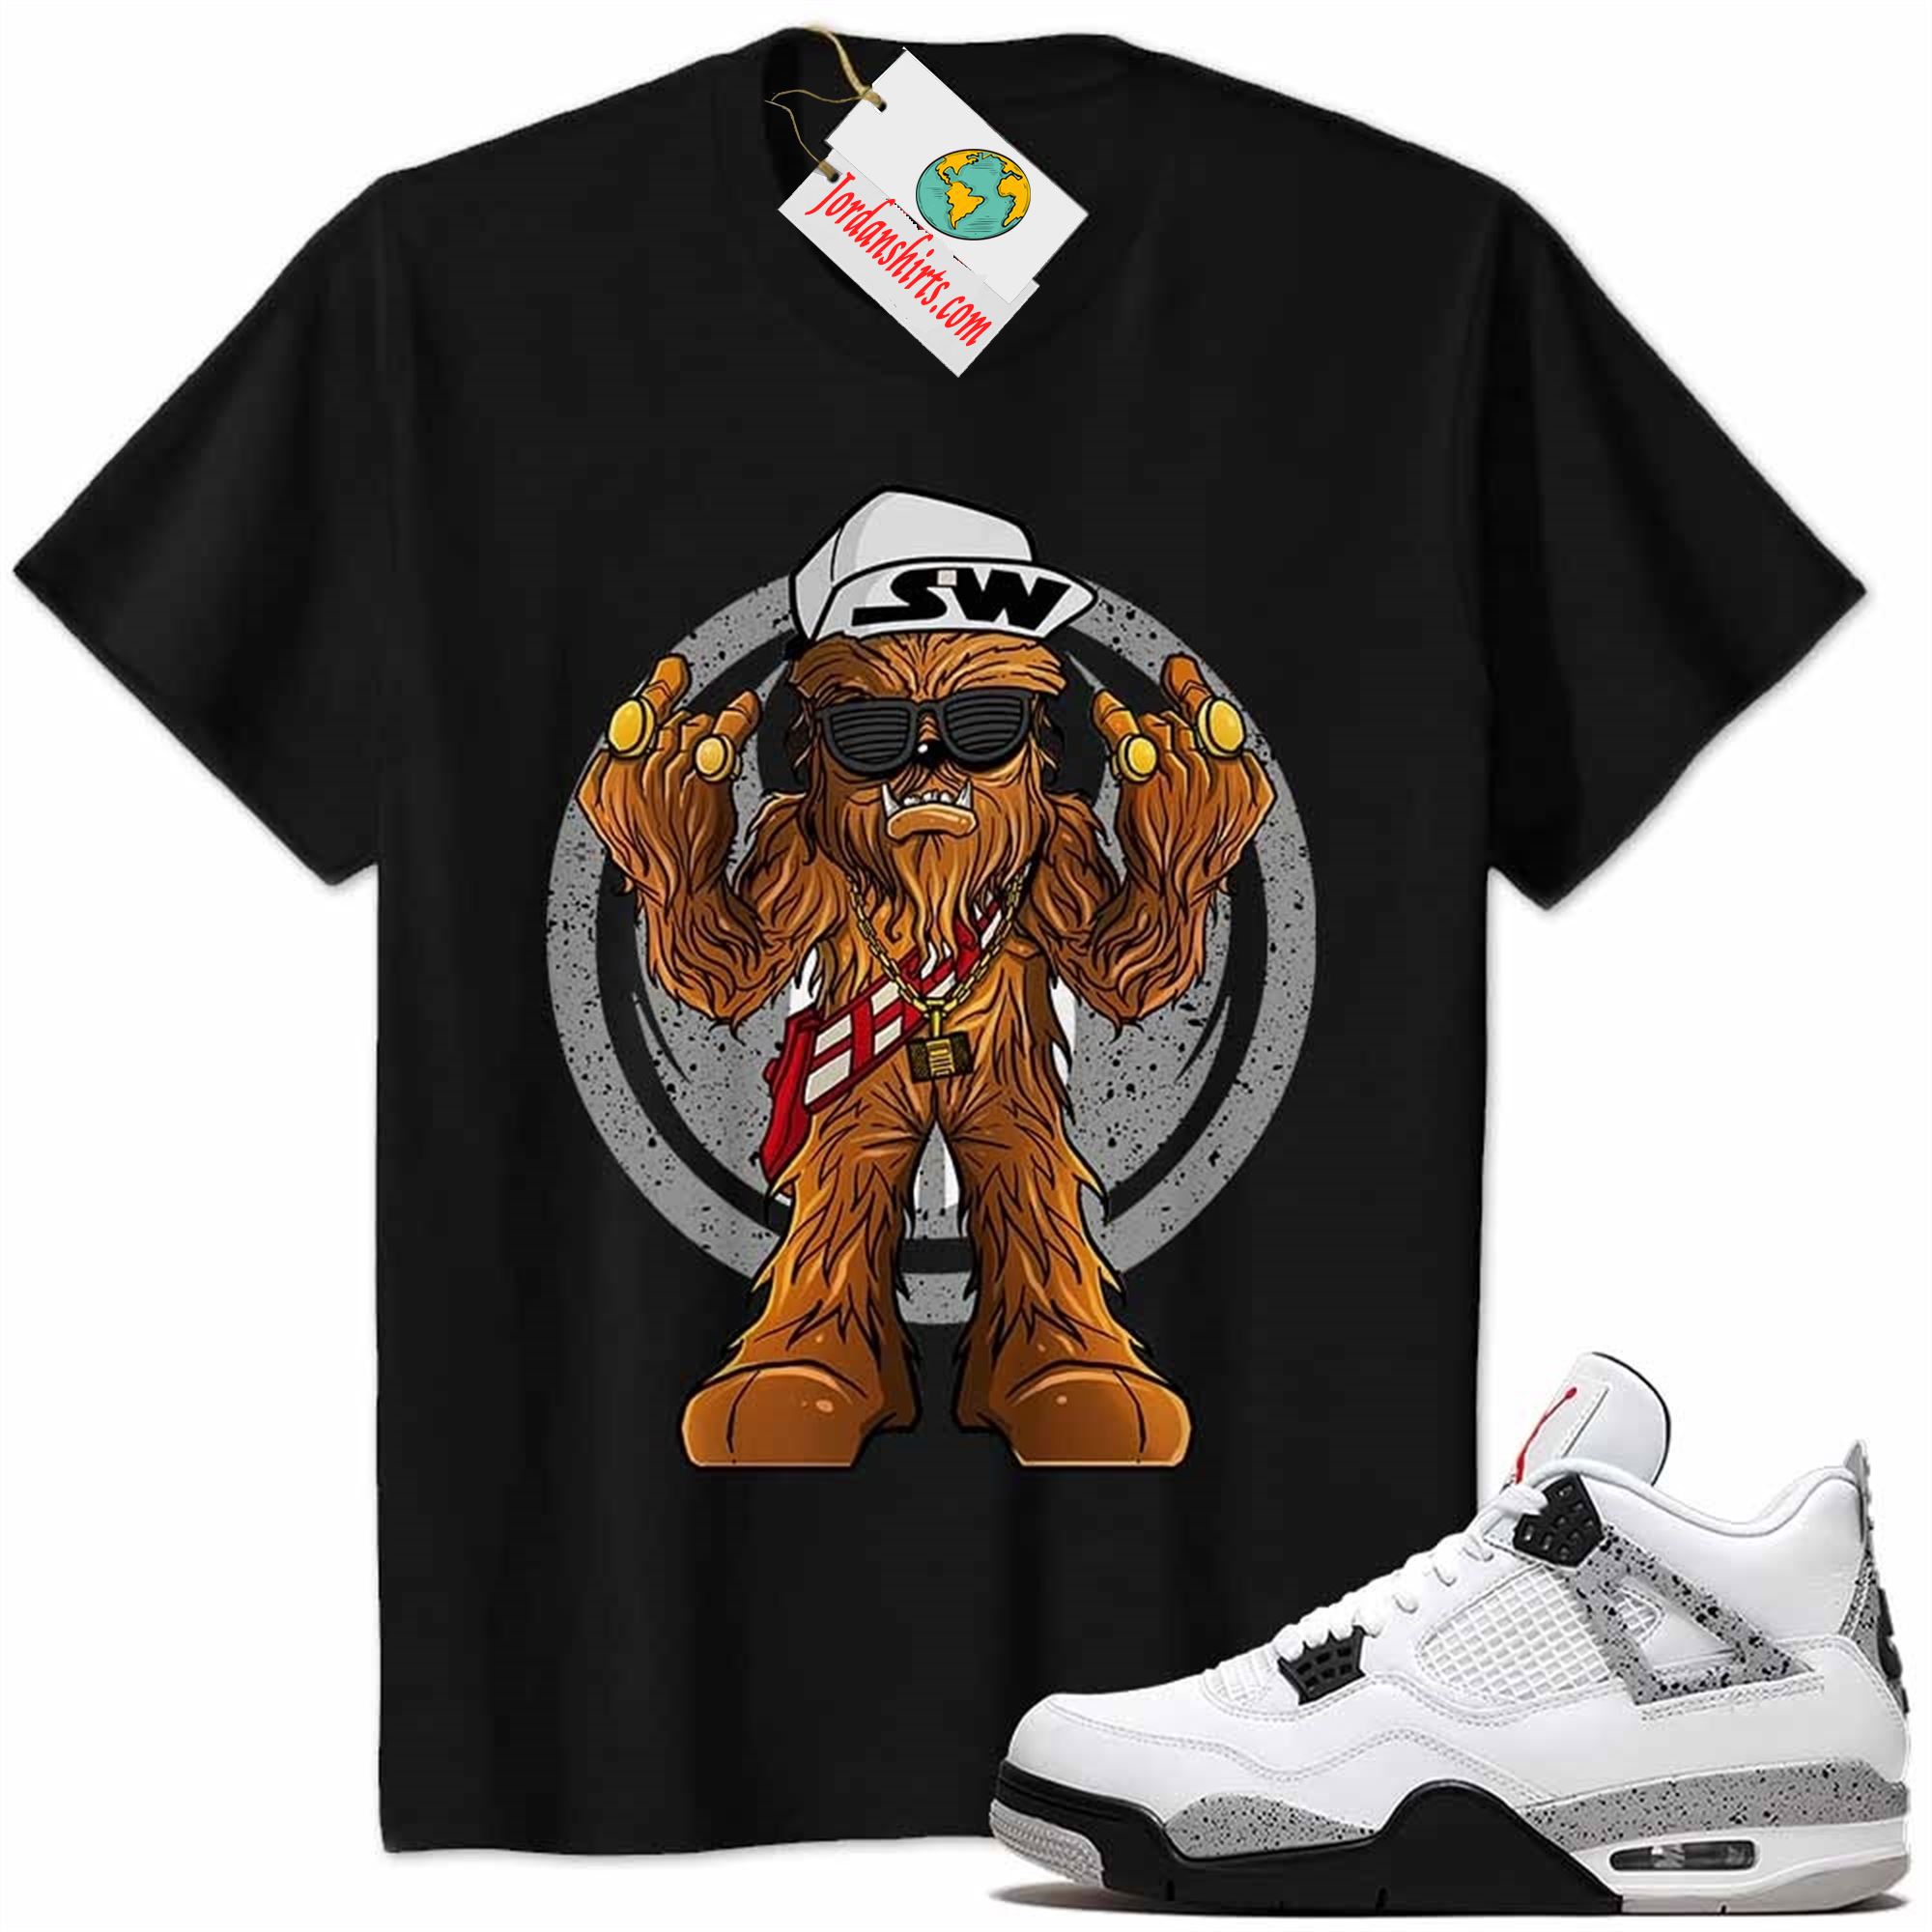 Jordan 4 Shirt, Gangster Chewbacca Stars War Black Air Jordan 4 Cement 4s Full Size Up To 5xl